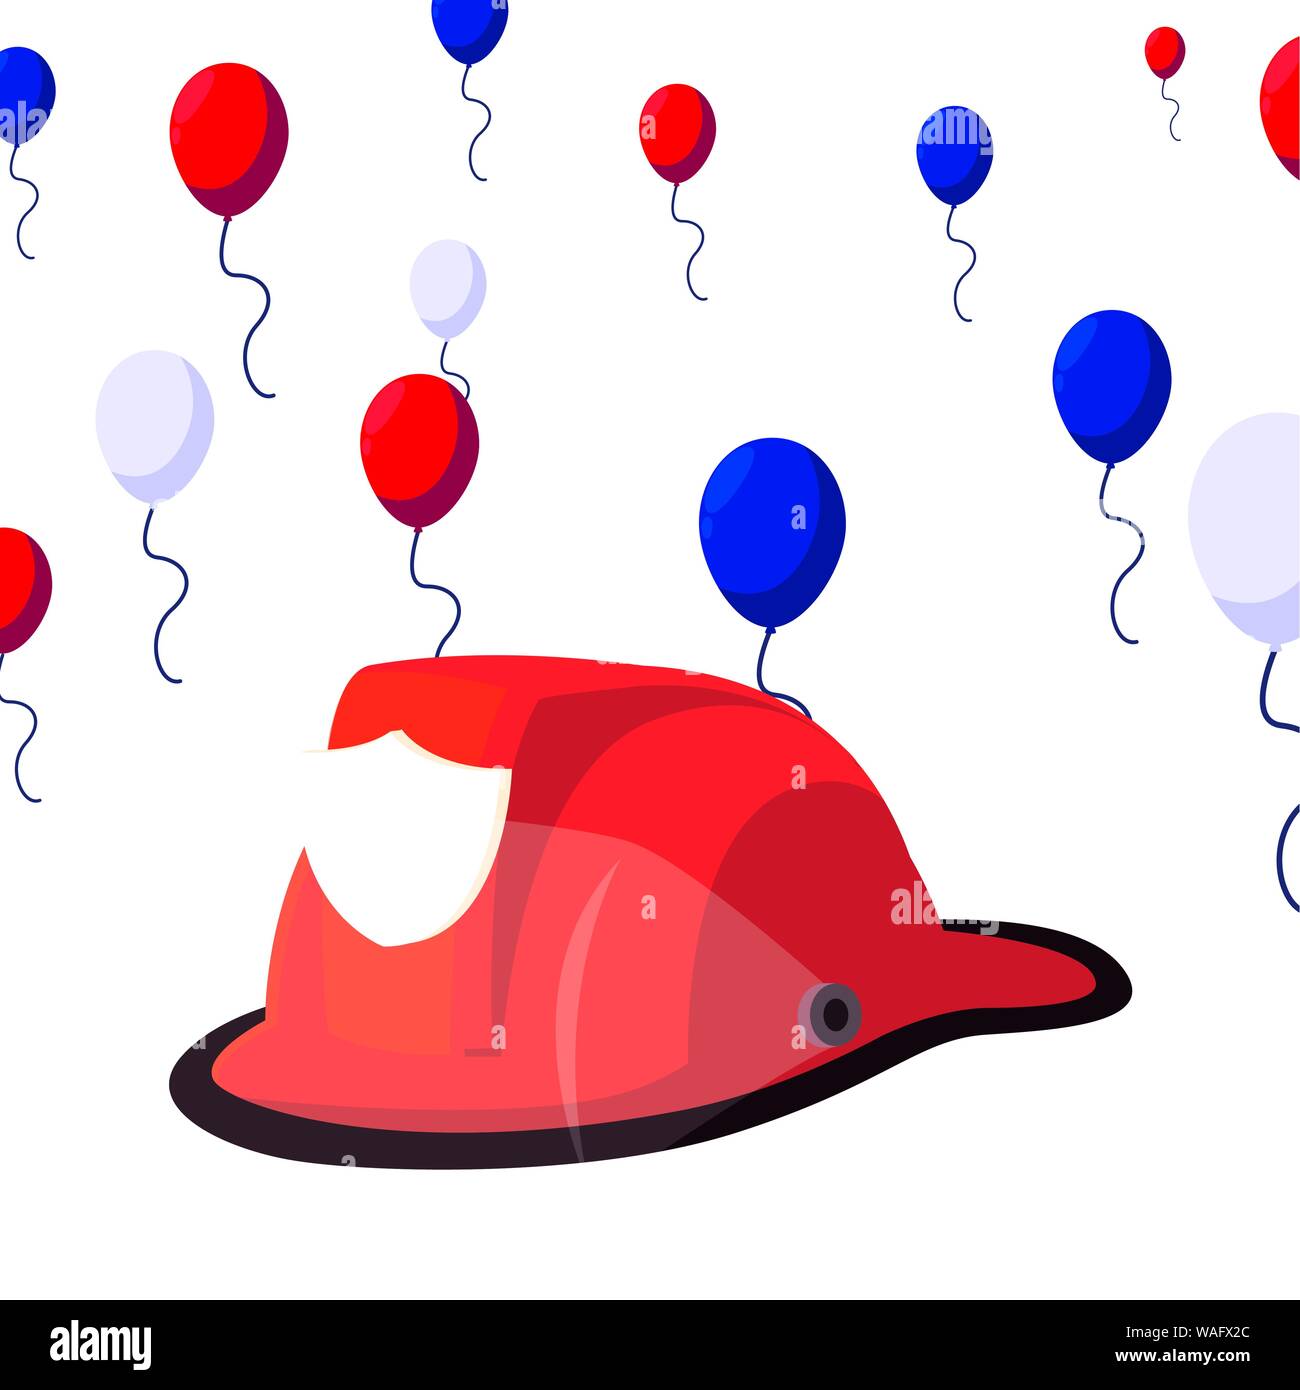 Bonne fête du travail - casque de pompier célébration ballons vector  illustration Image Vectorielle Stock - Alamy